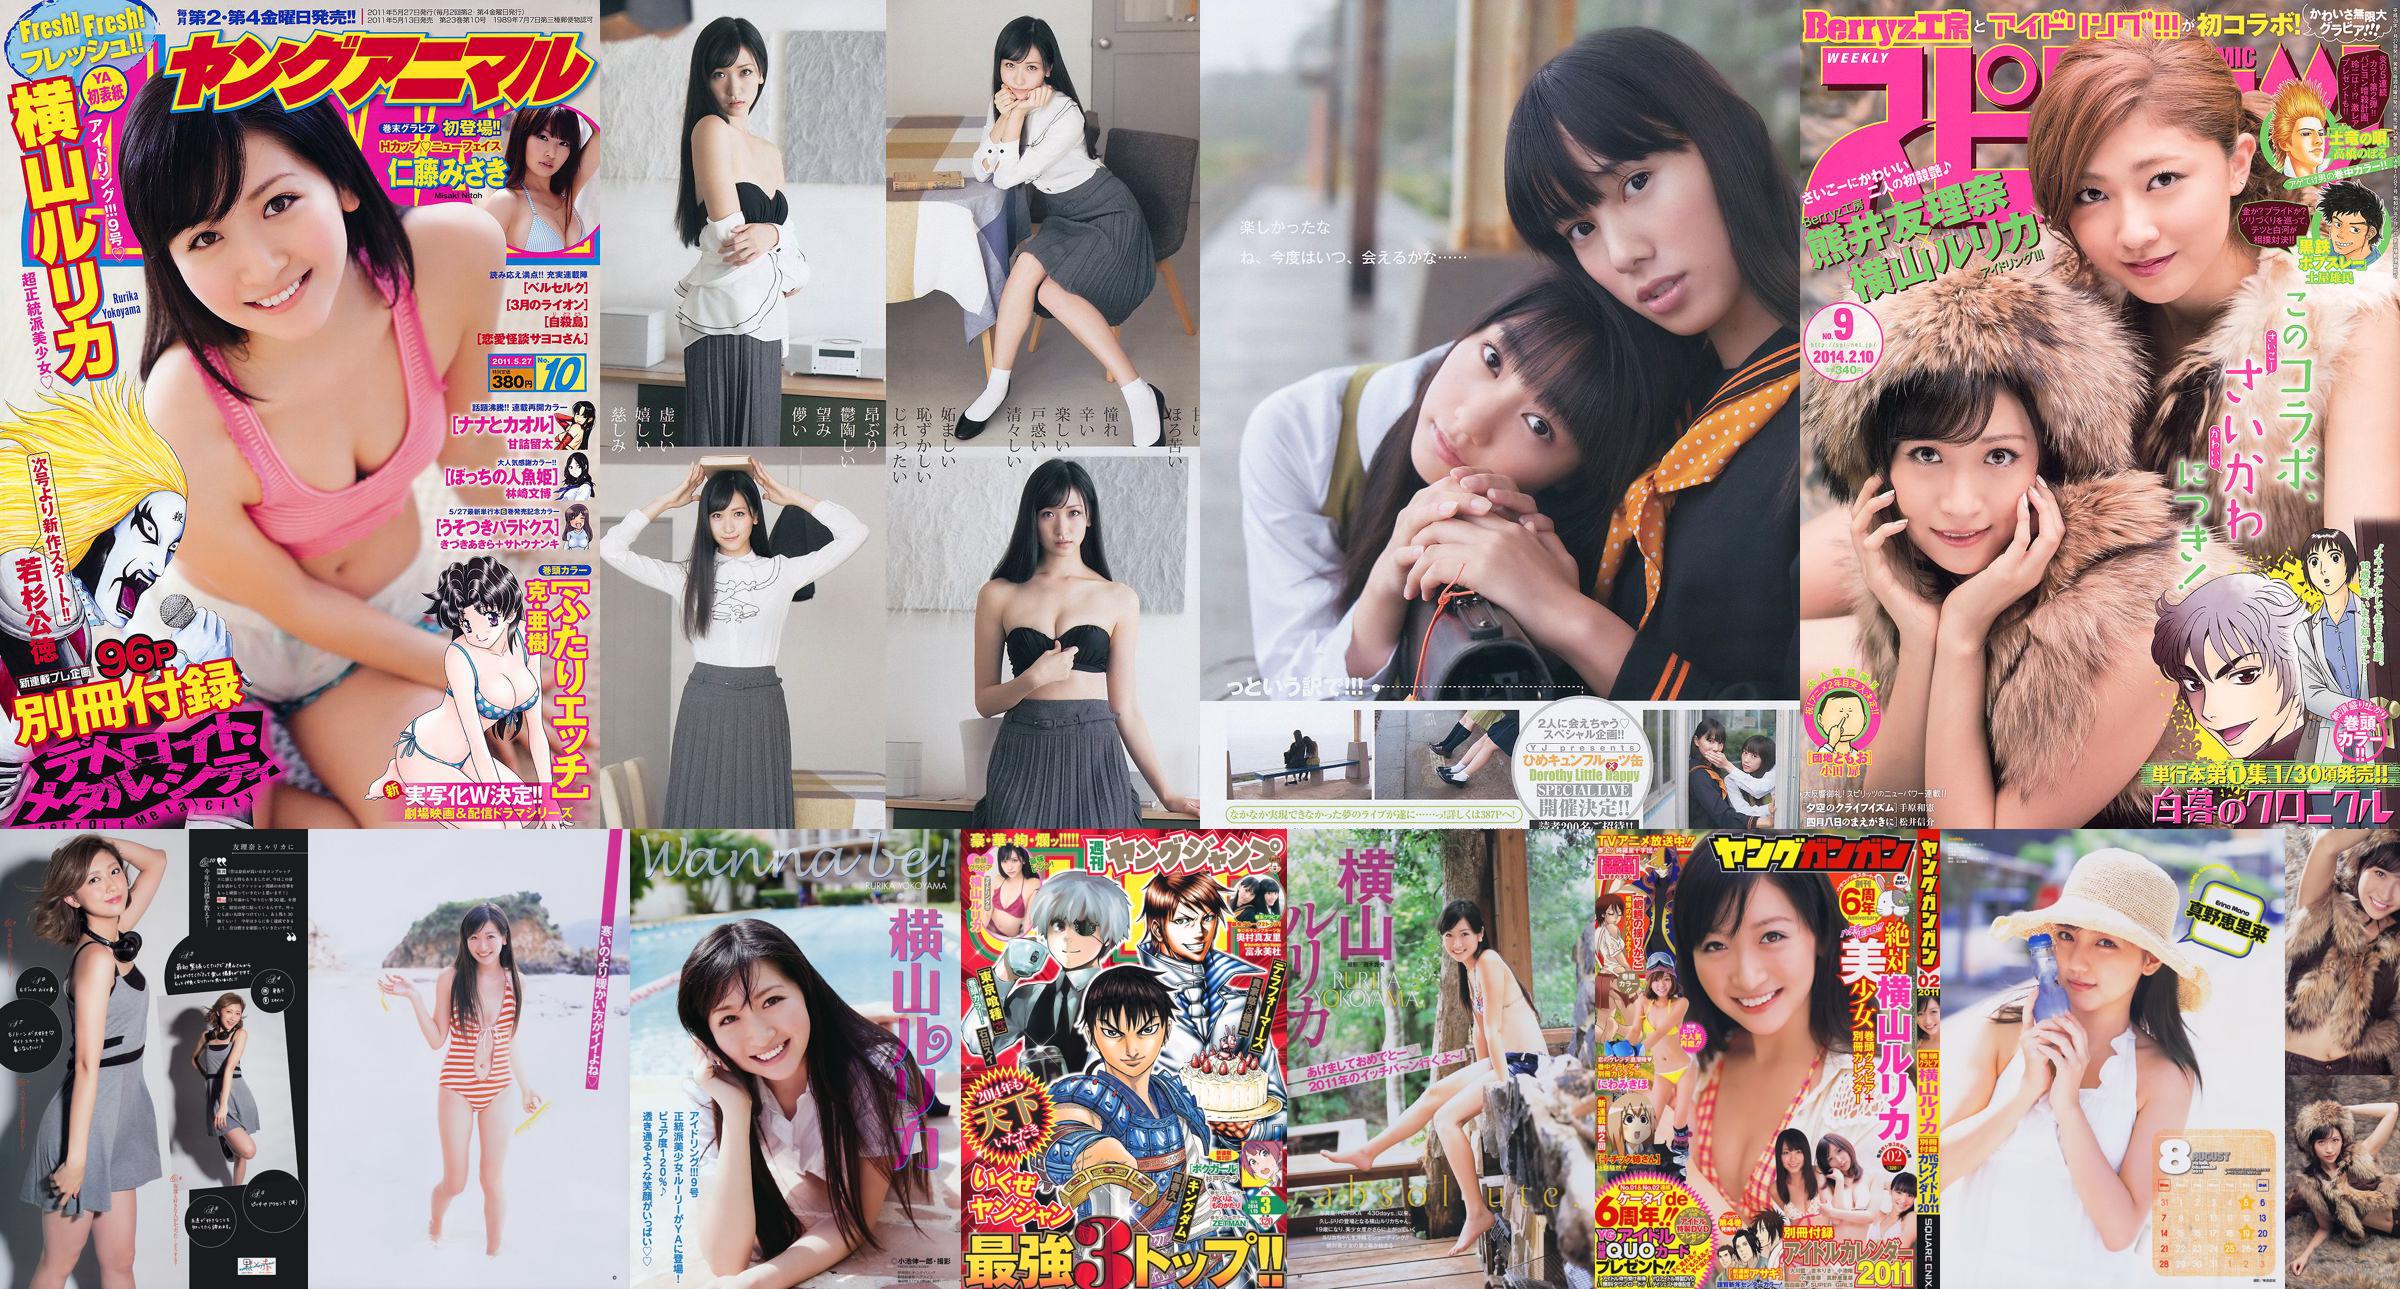 [Young Gangan] Rurika Yokoyama 2011 No.02 Photo Magazine No.43e94c Página 1